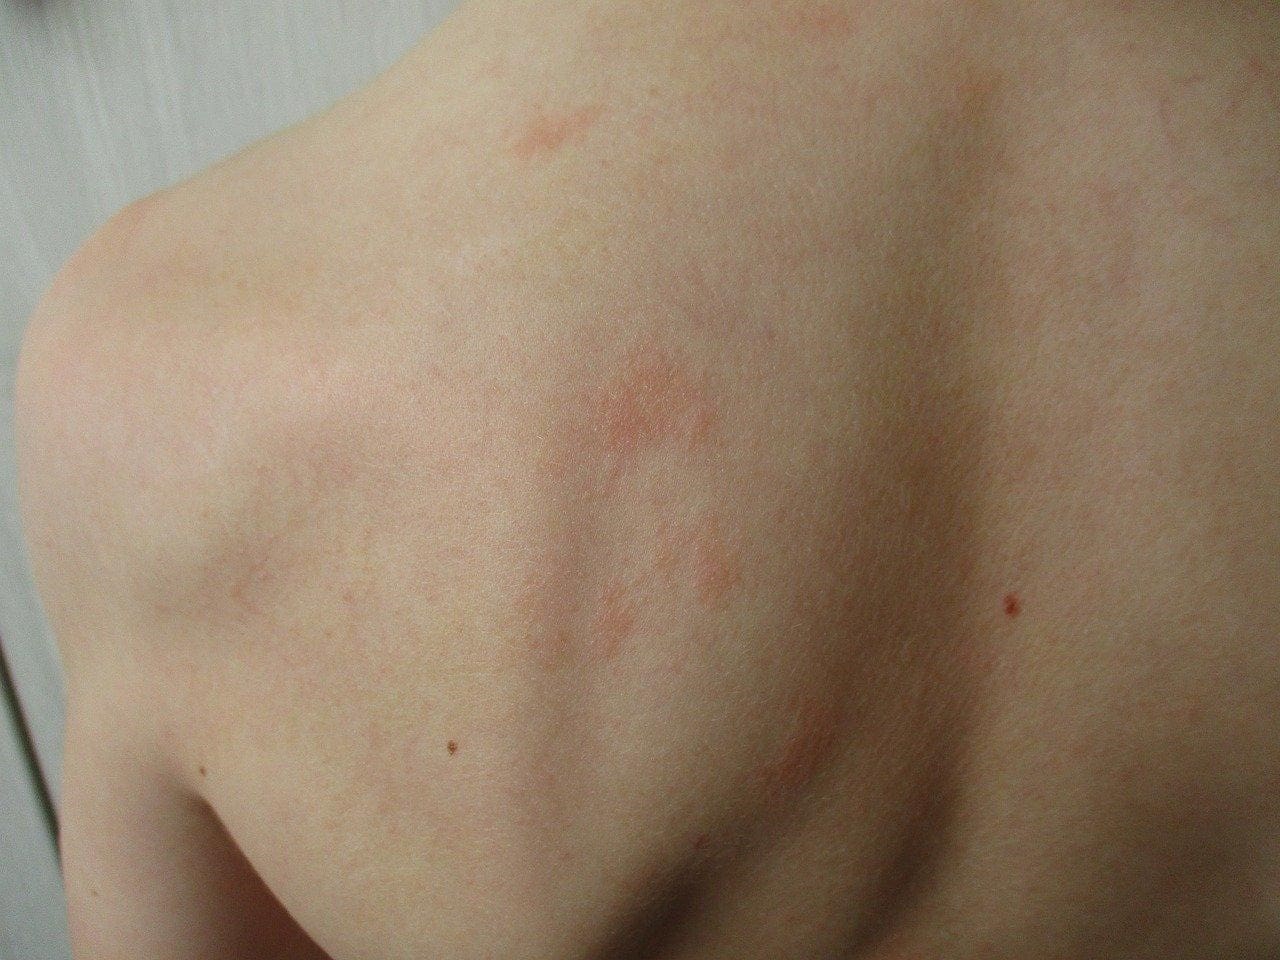 Eczema on the back